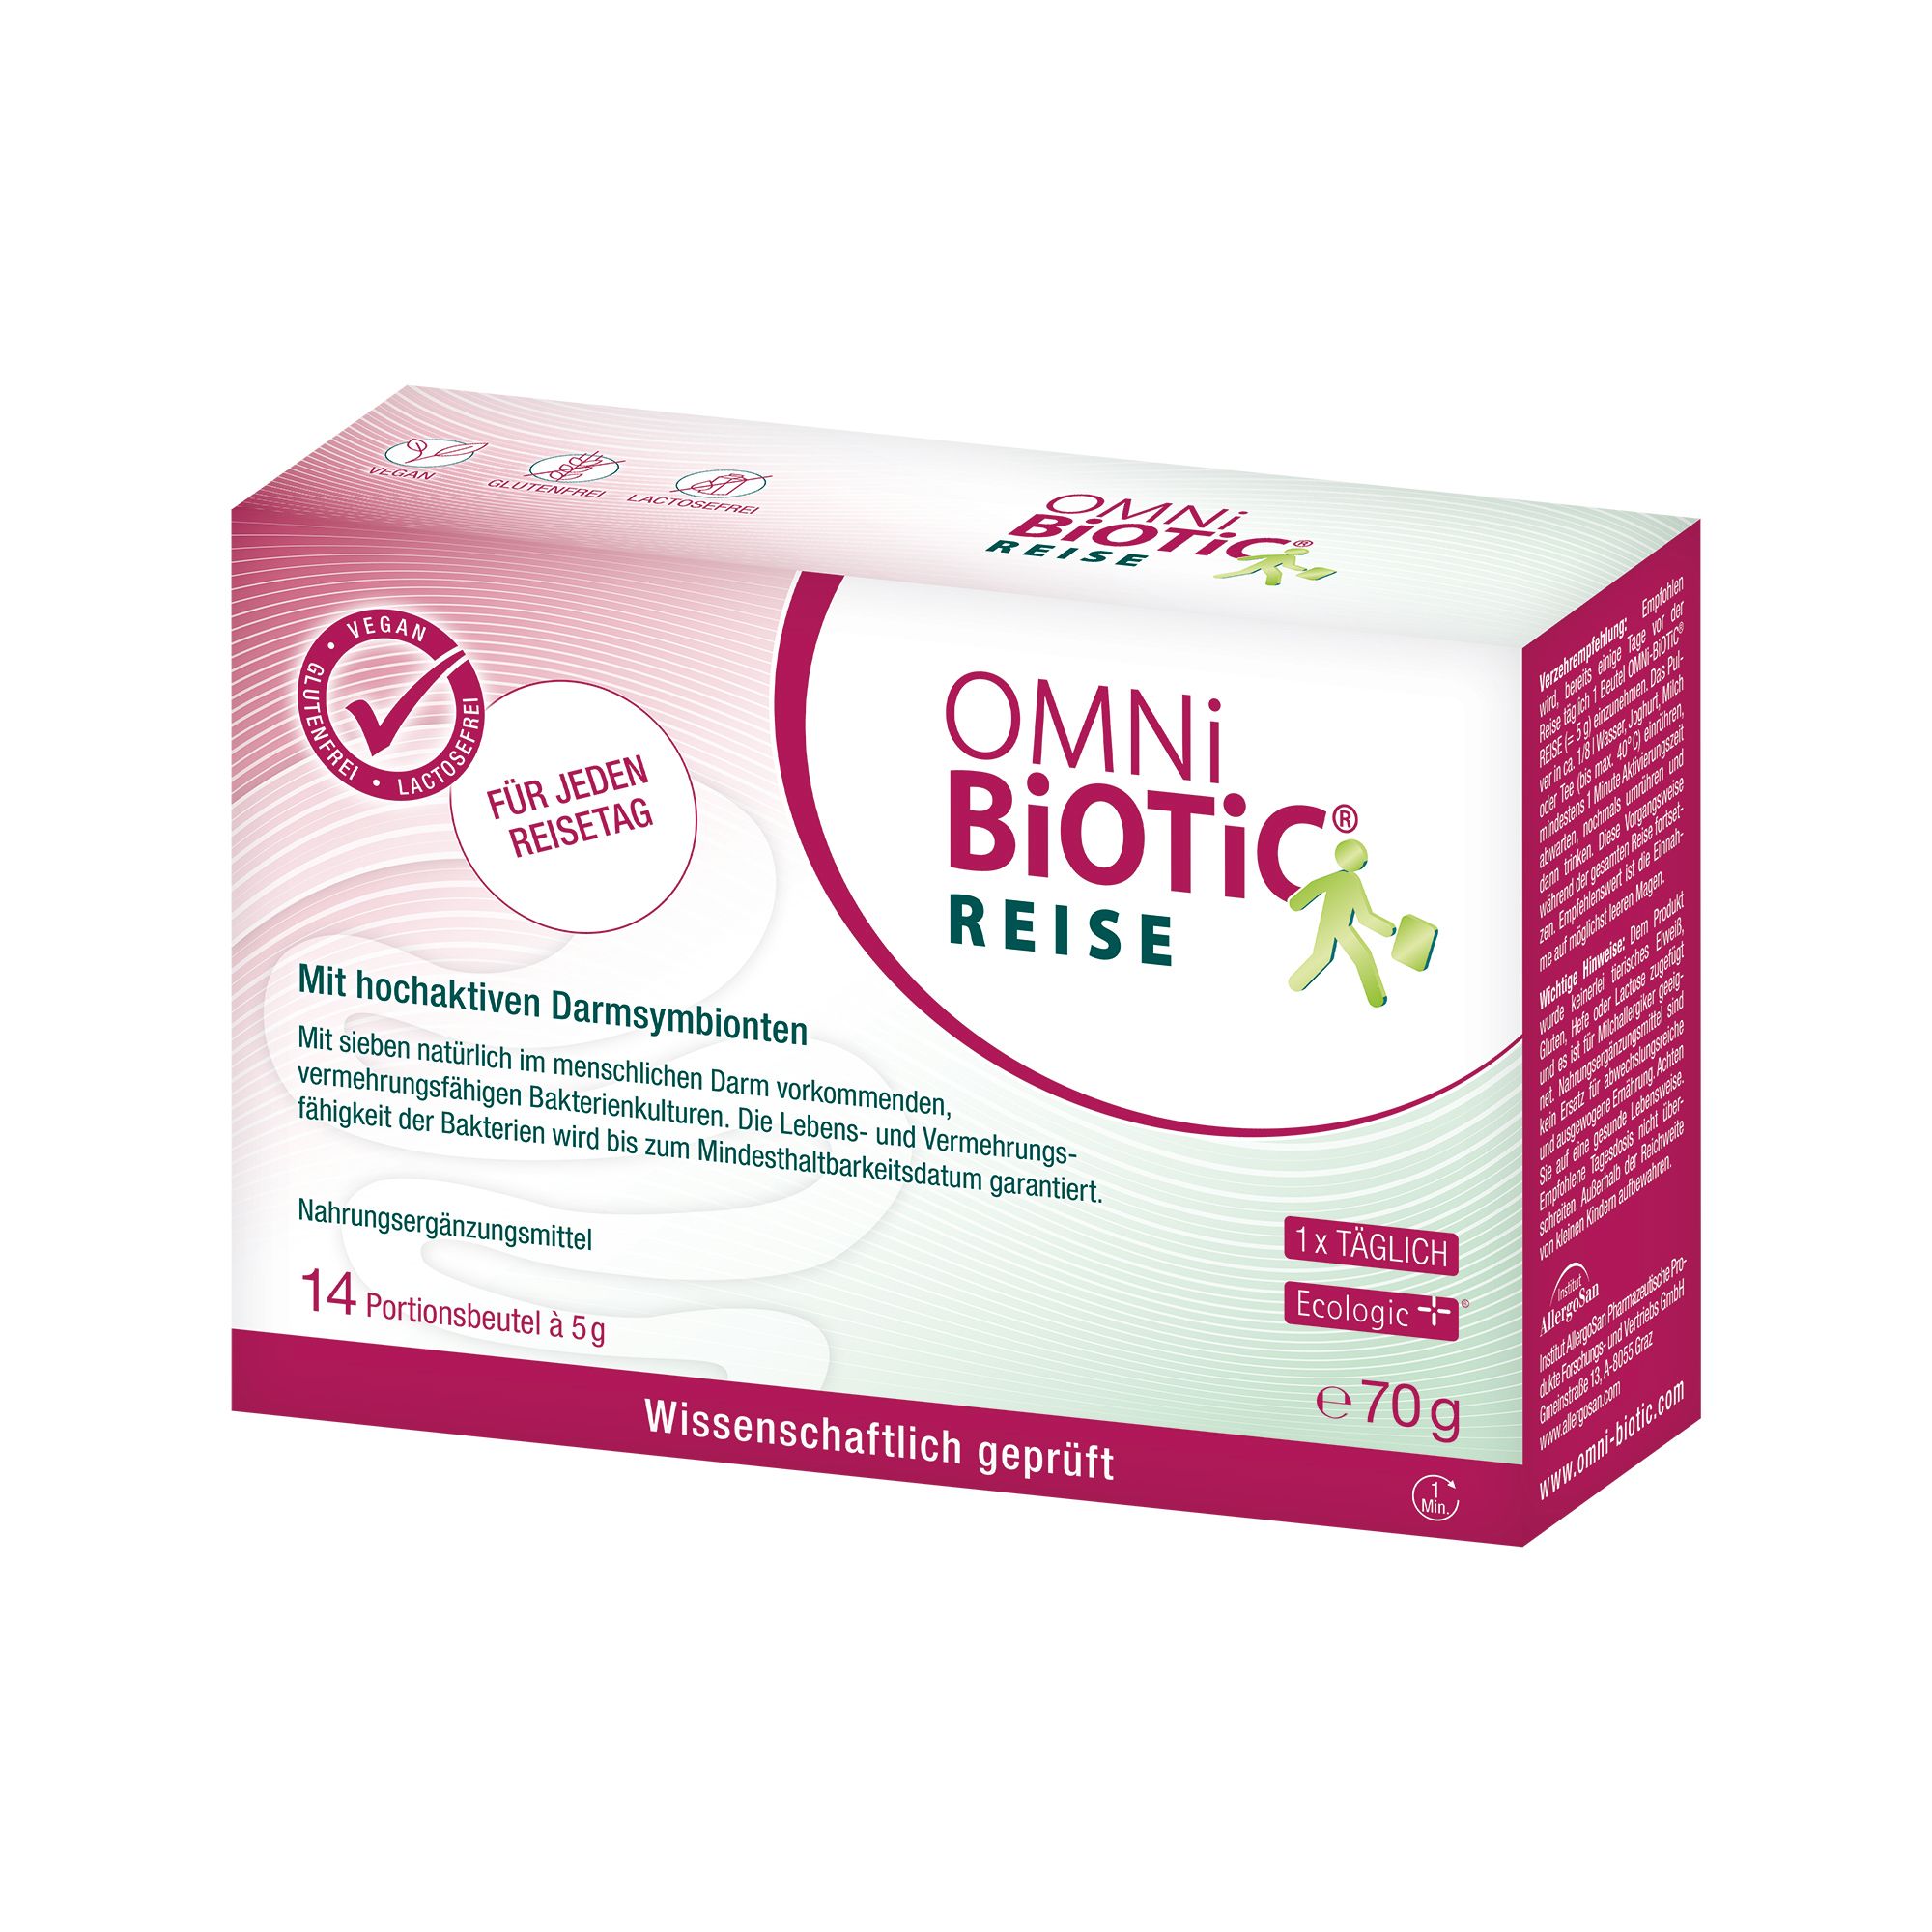 OMNi-BiOTiC® REISE